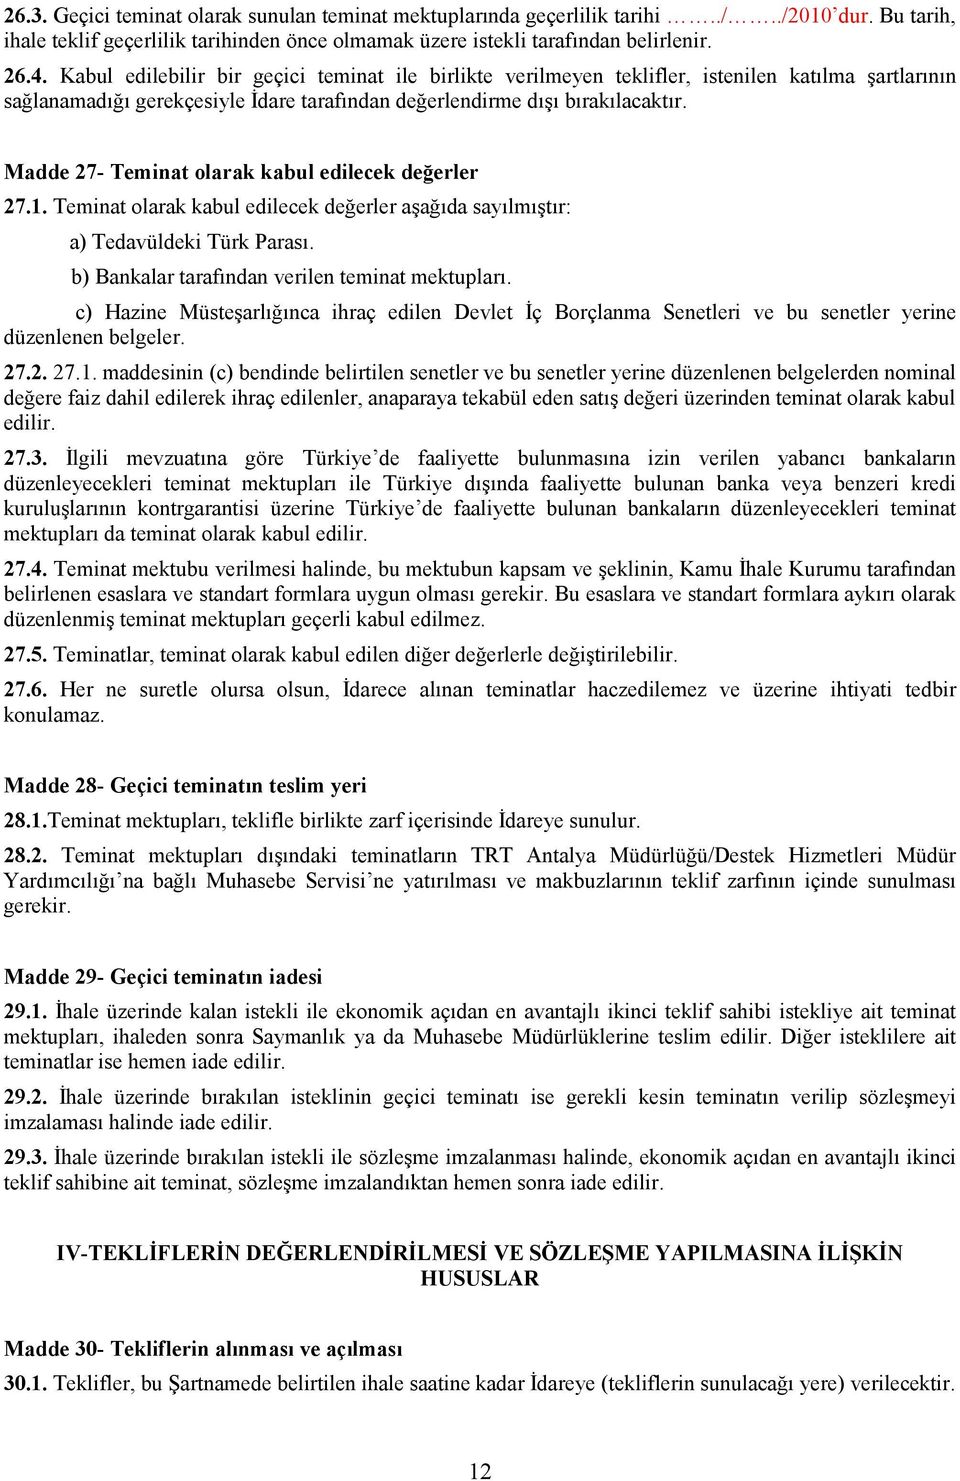 Madde 27- Teminat olarak kabul edilecek değerler 27.1. Teminat olarak kabul edilecek değerler aşağıda sayılmıştır: a) Tedavüldeki Türk Parası. b) Bankalar tarafından verilen teminat mektupları.